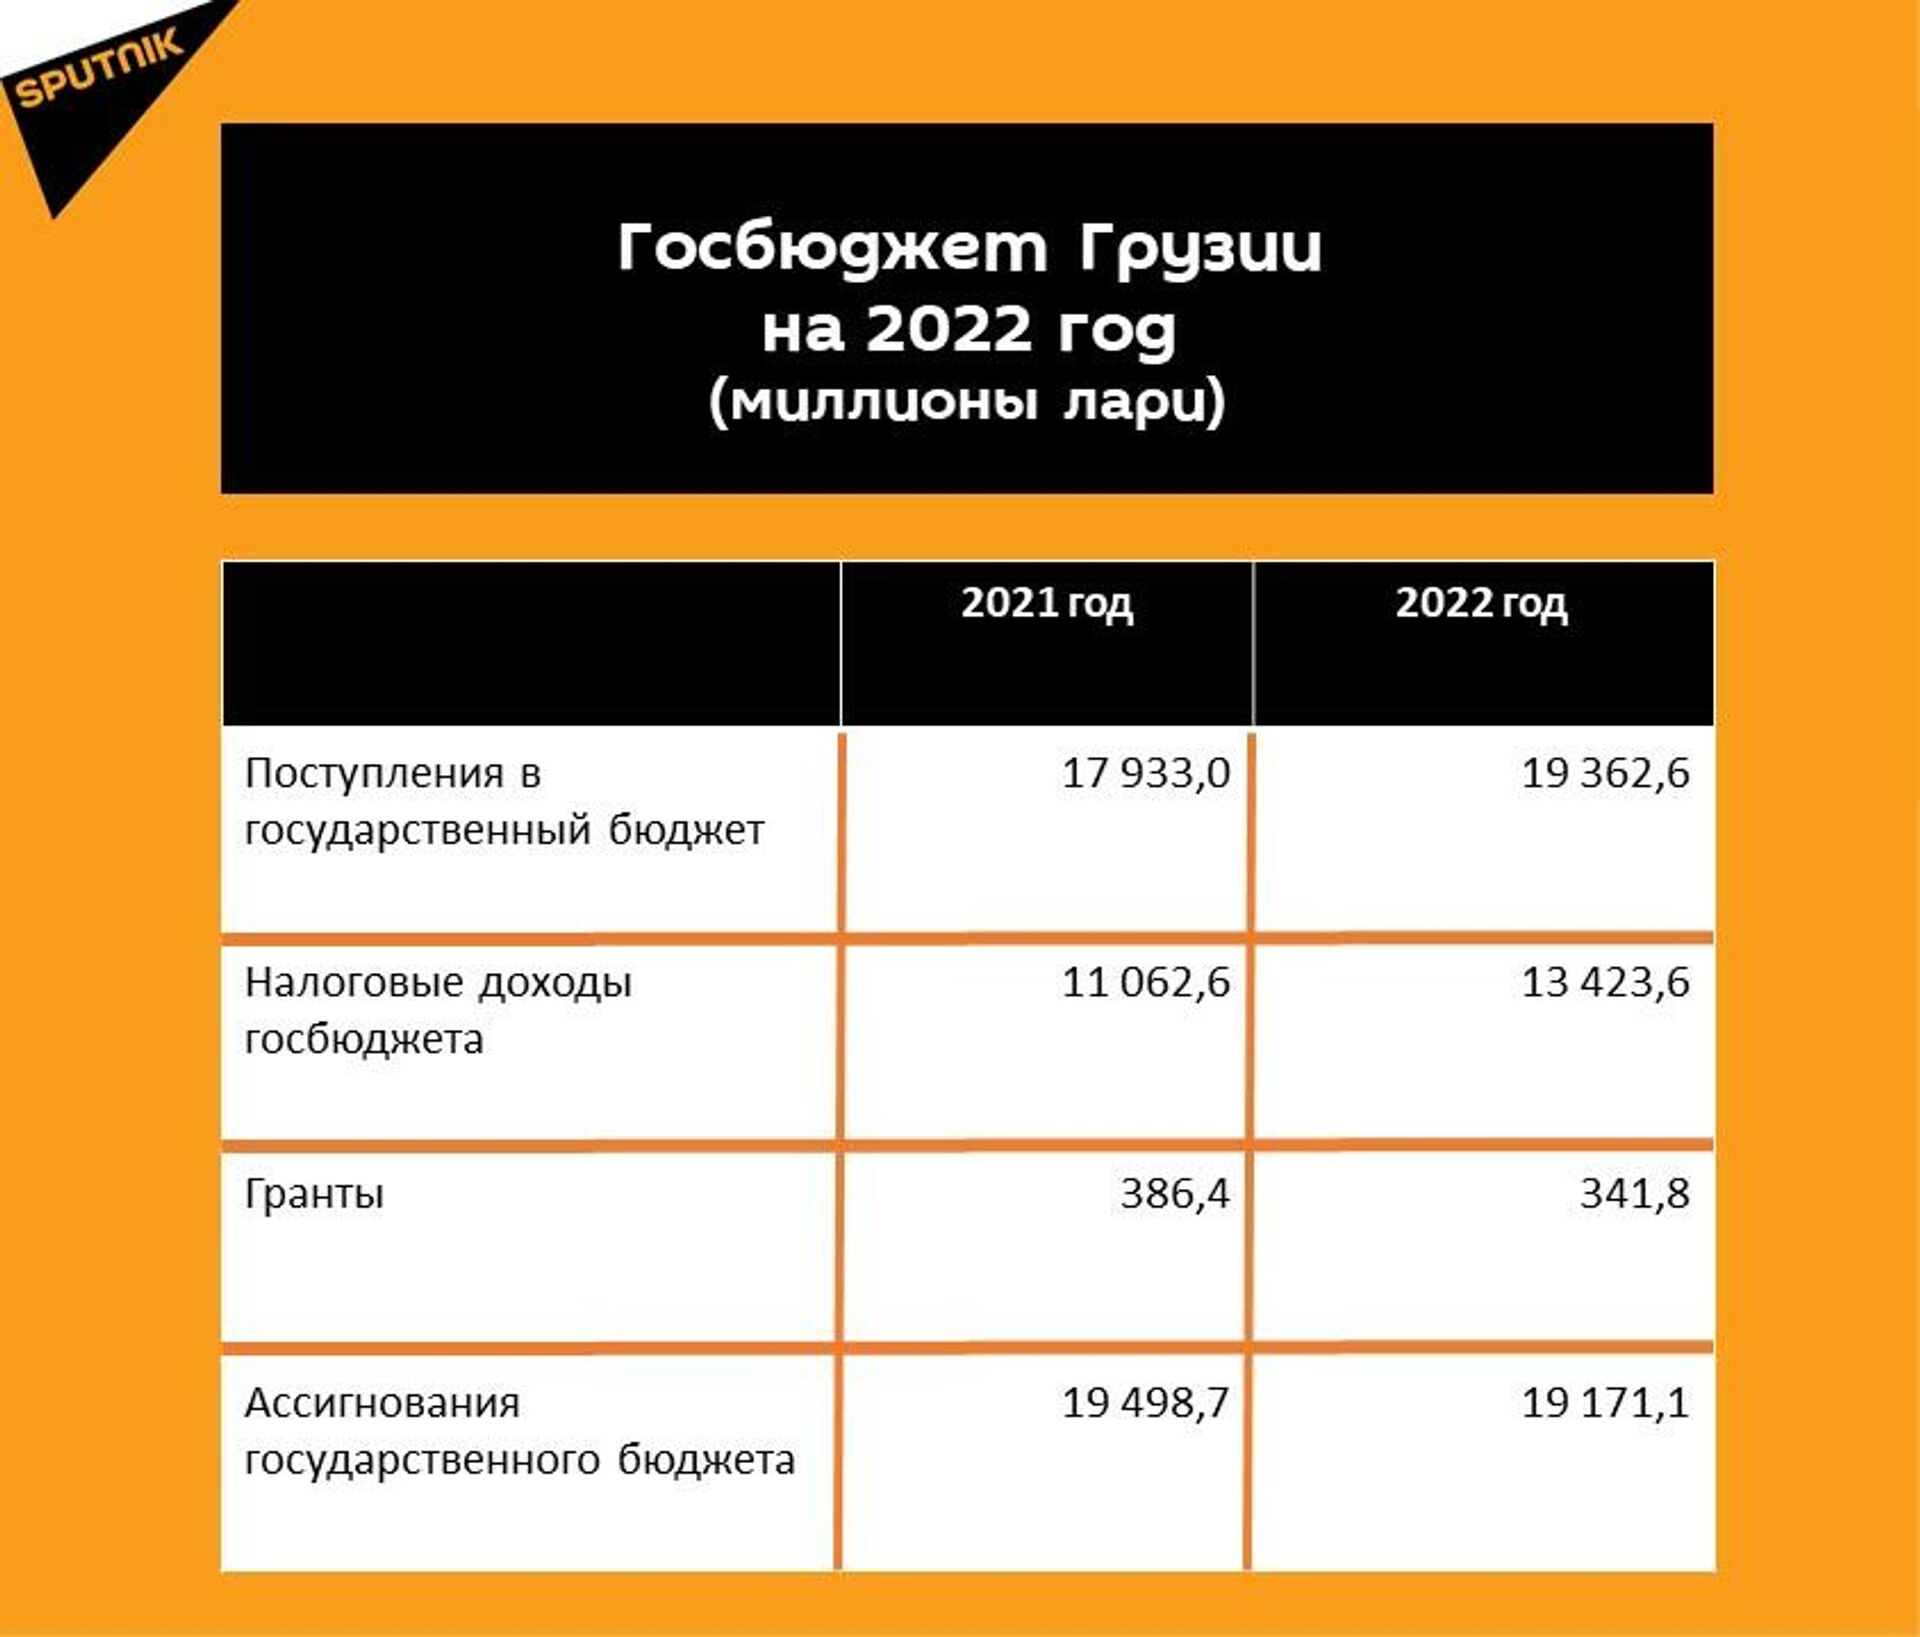 Прогнозные показатели госбюджета Грузии на 2022 год - Sputnik Грузия, 1920, 04.01.2022